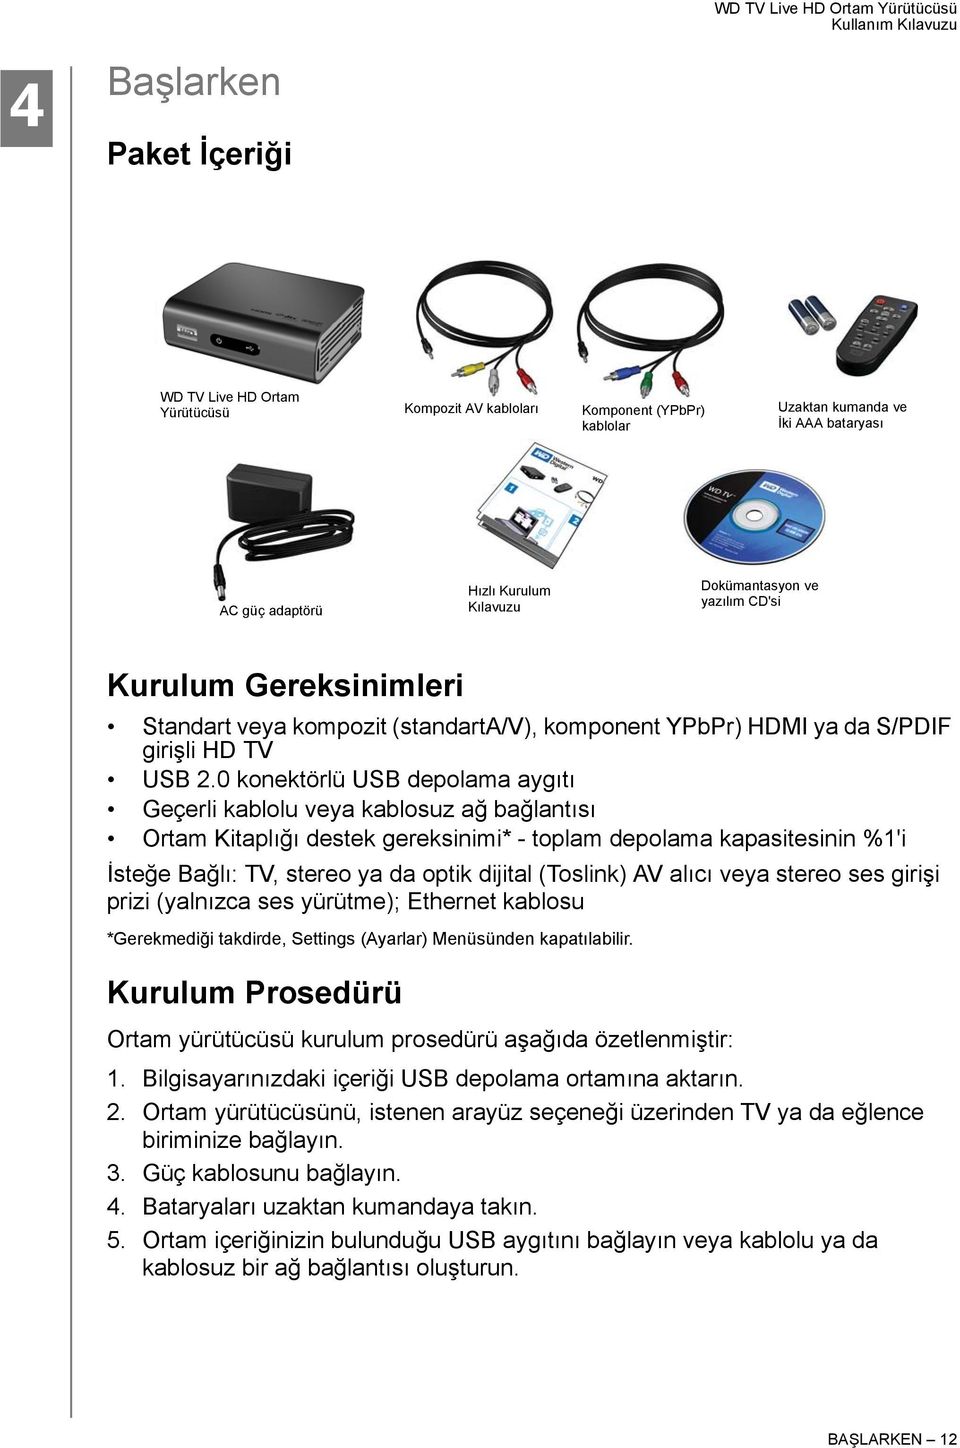 0 konektörlü USB depolama aygıtı Geçerli kablolu veya kablosuz ağ bağlantısı Ortam Kitaplığı destek gereksinimi* - toplam depolama kapasitesinin %1'i İsteğe Bağlı: TV, stereo ya da optik dijital